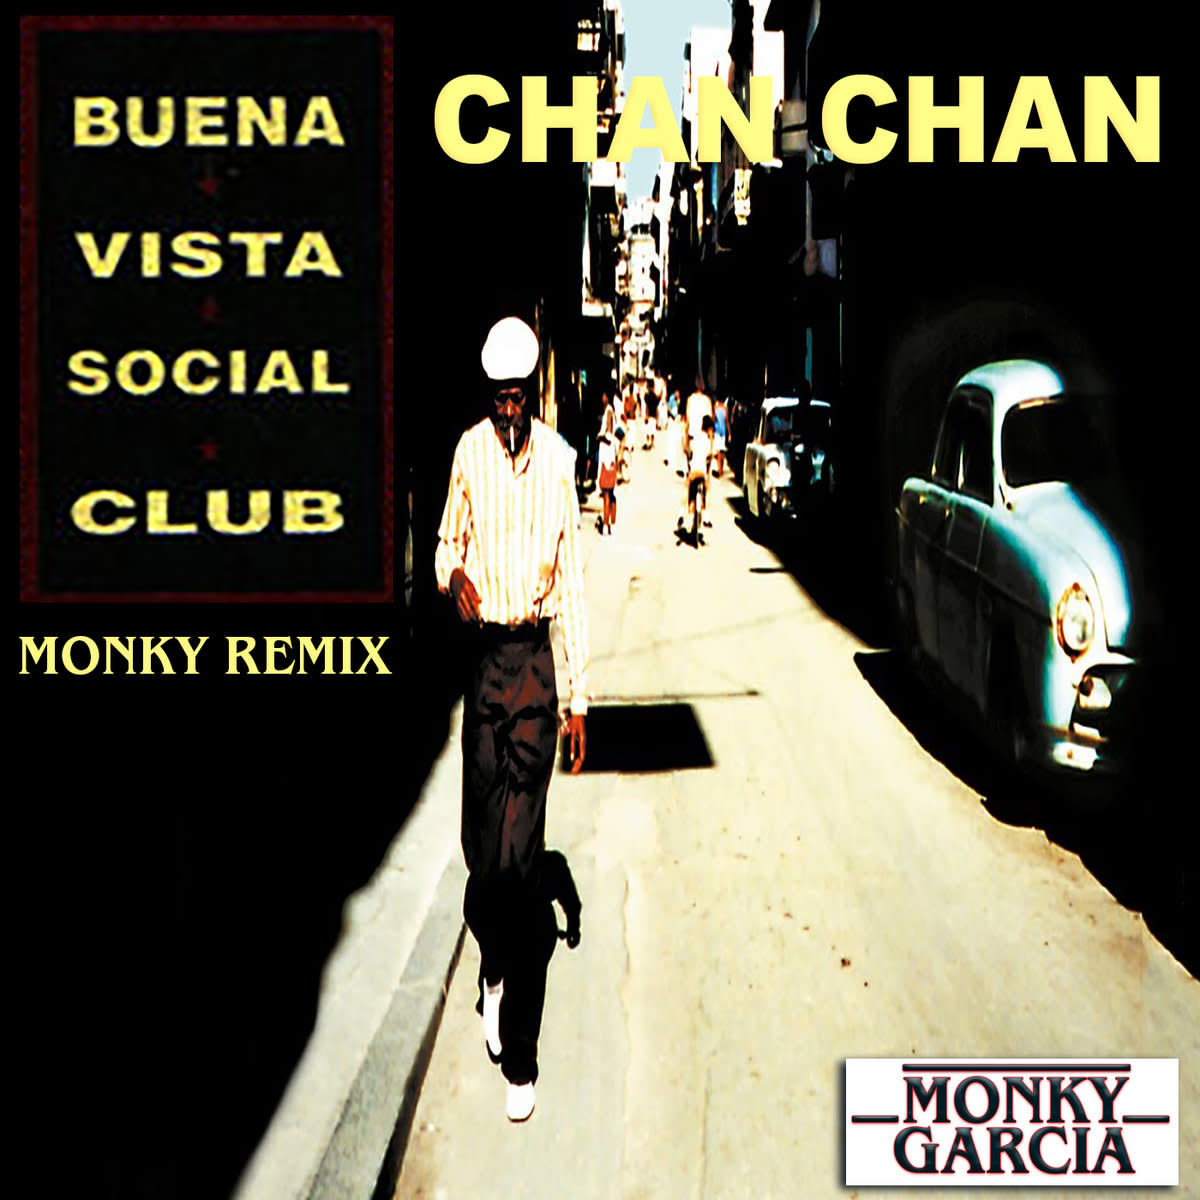 Chan Chan - Buena Vista Social Club